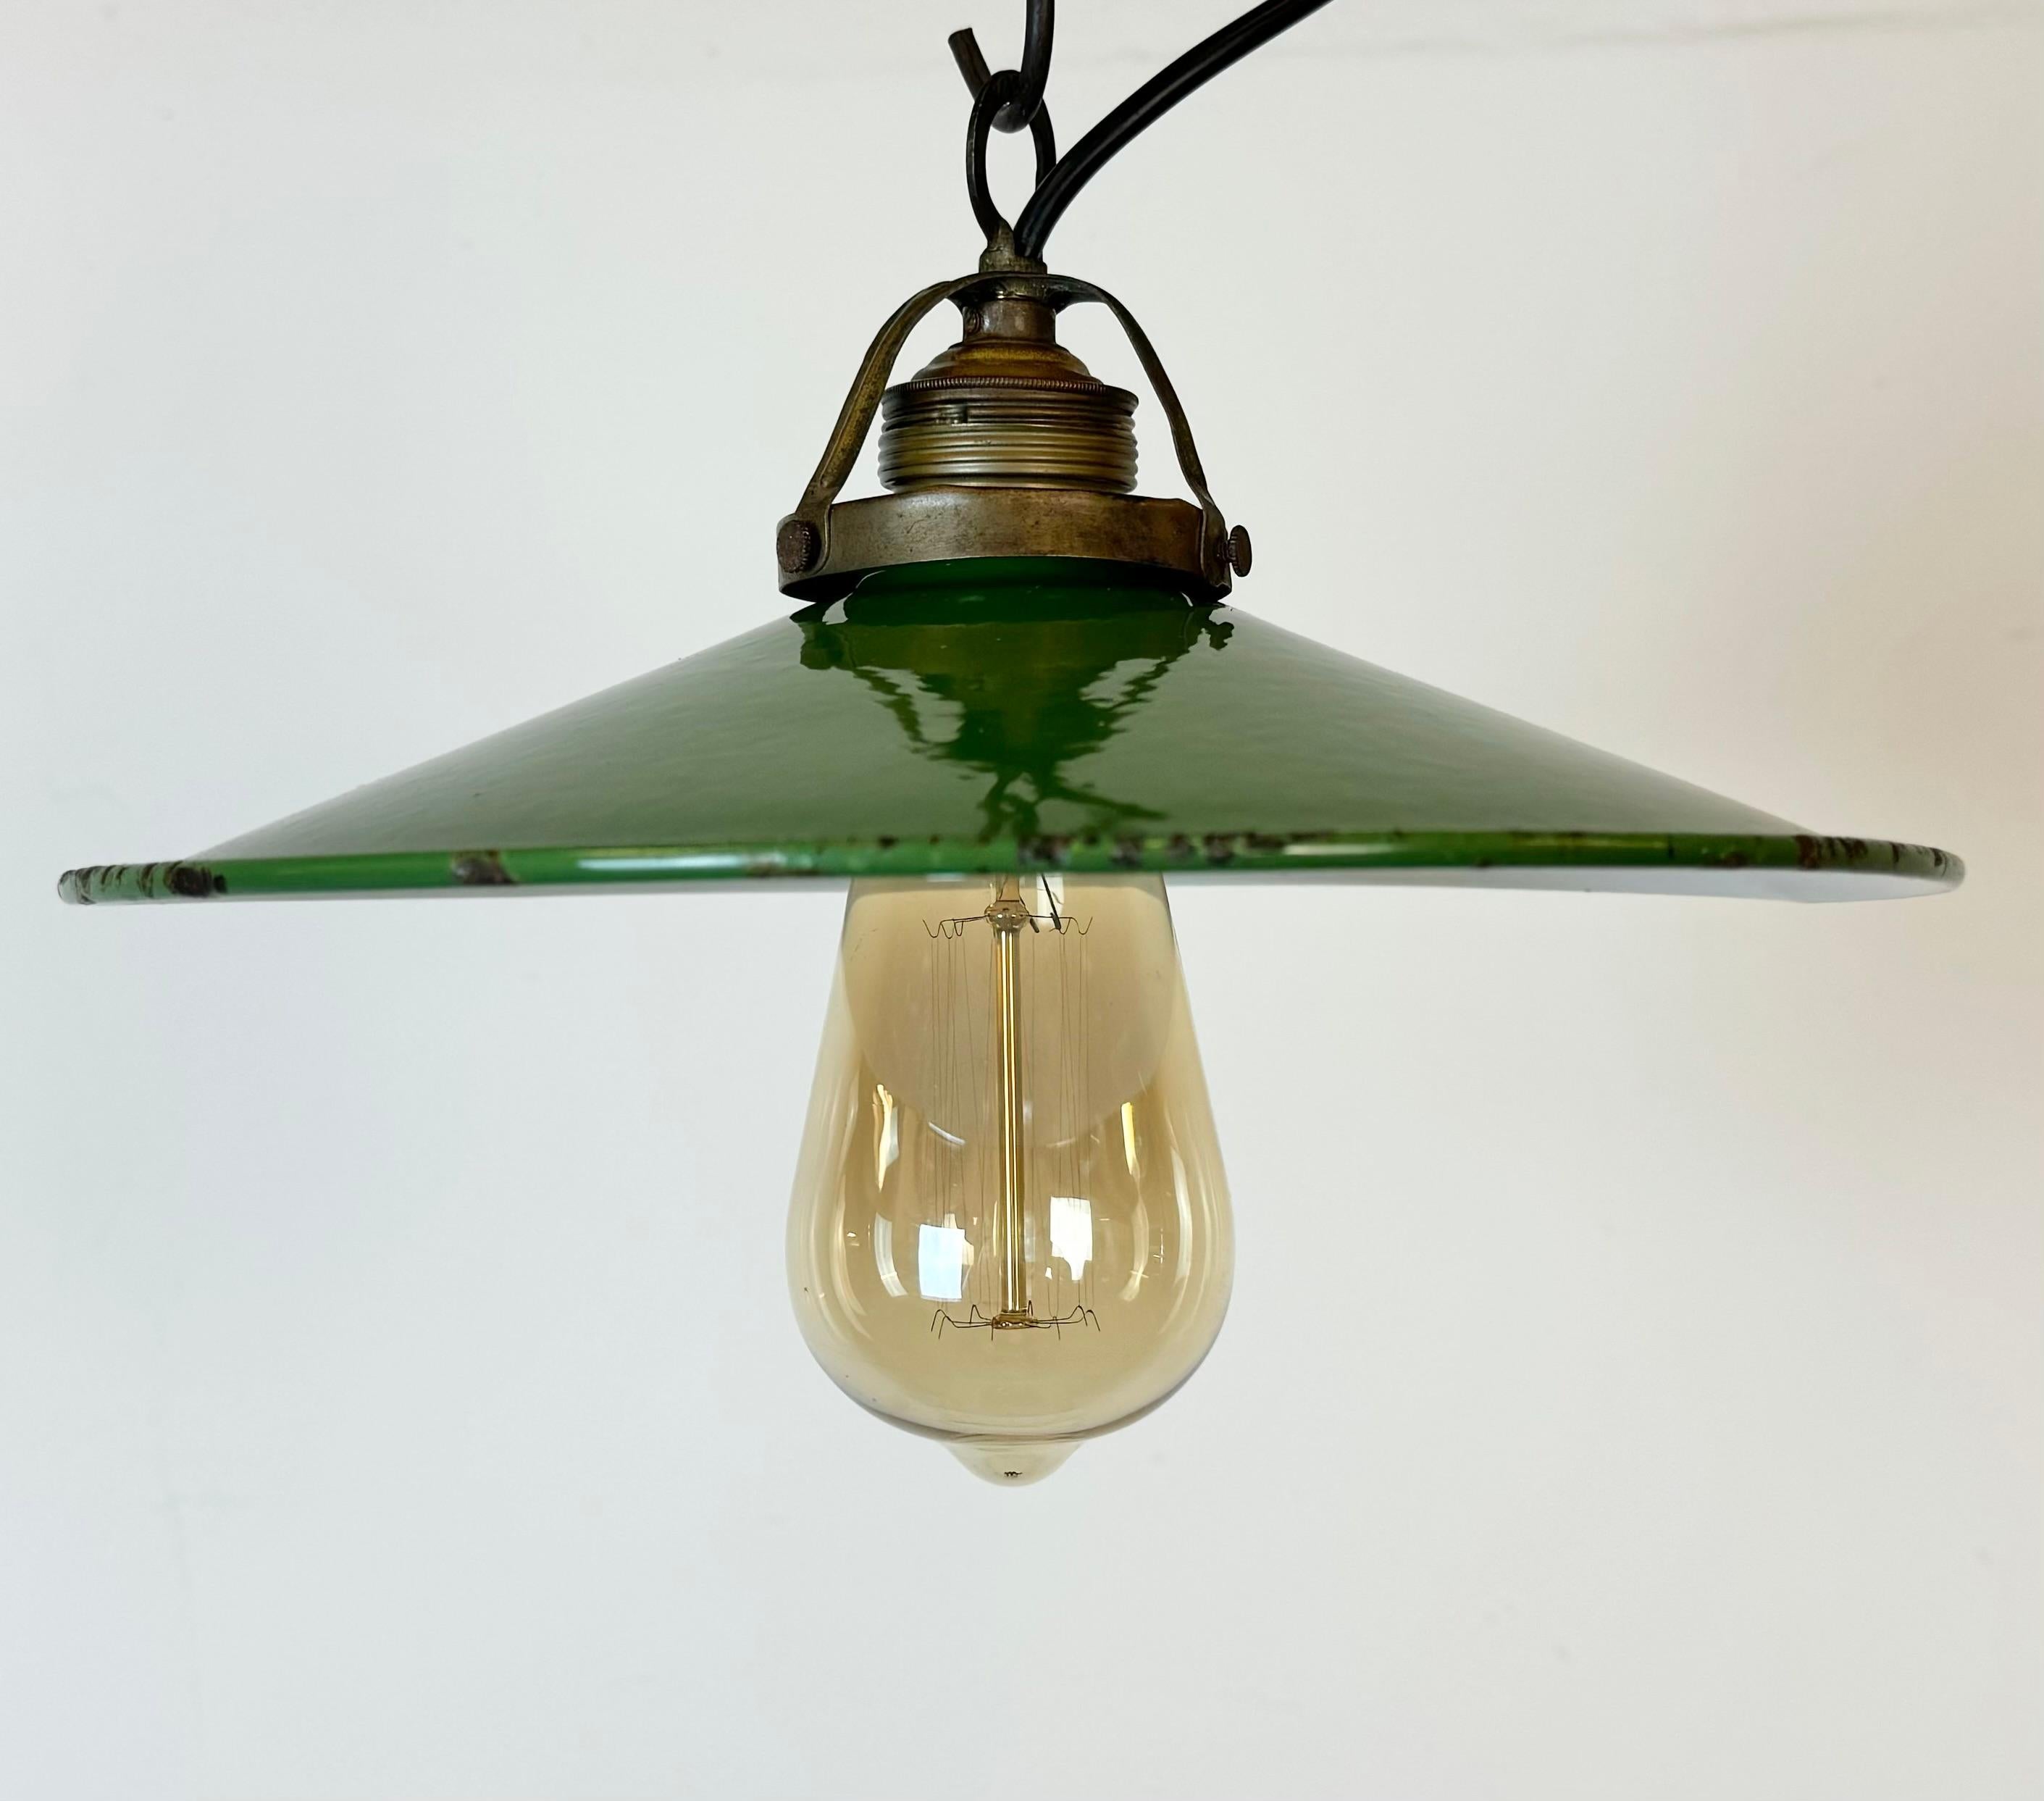 Czech Industrial Green Enamel Light, 1930s For Sale